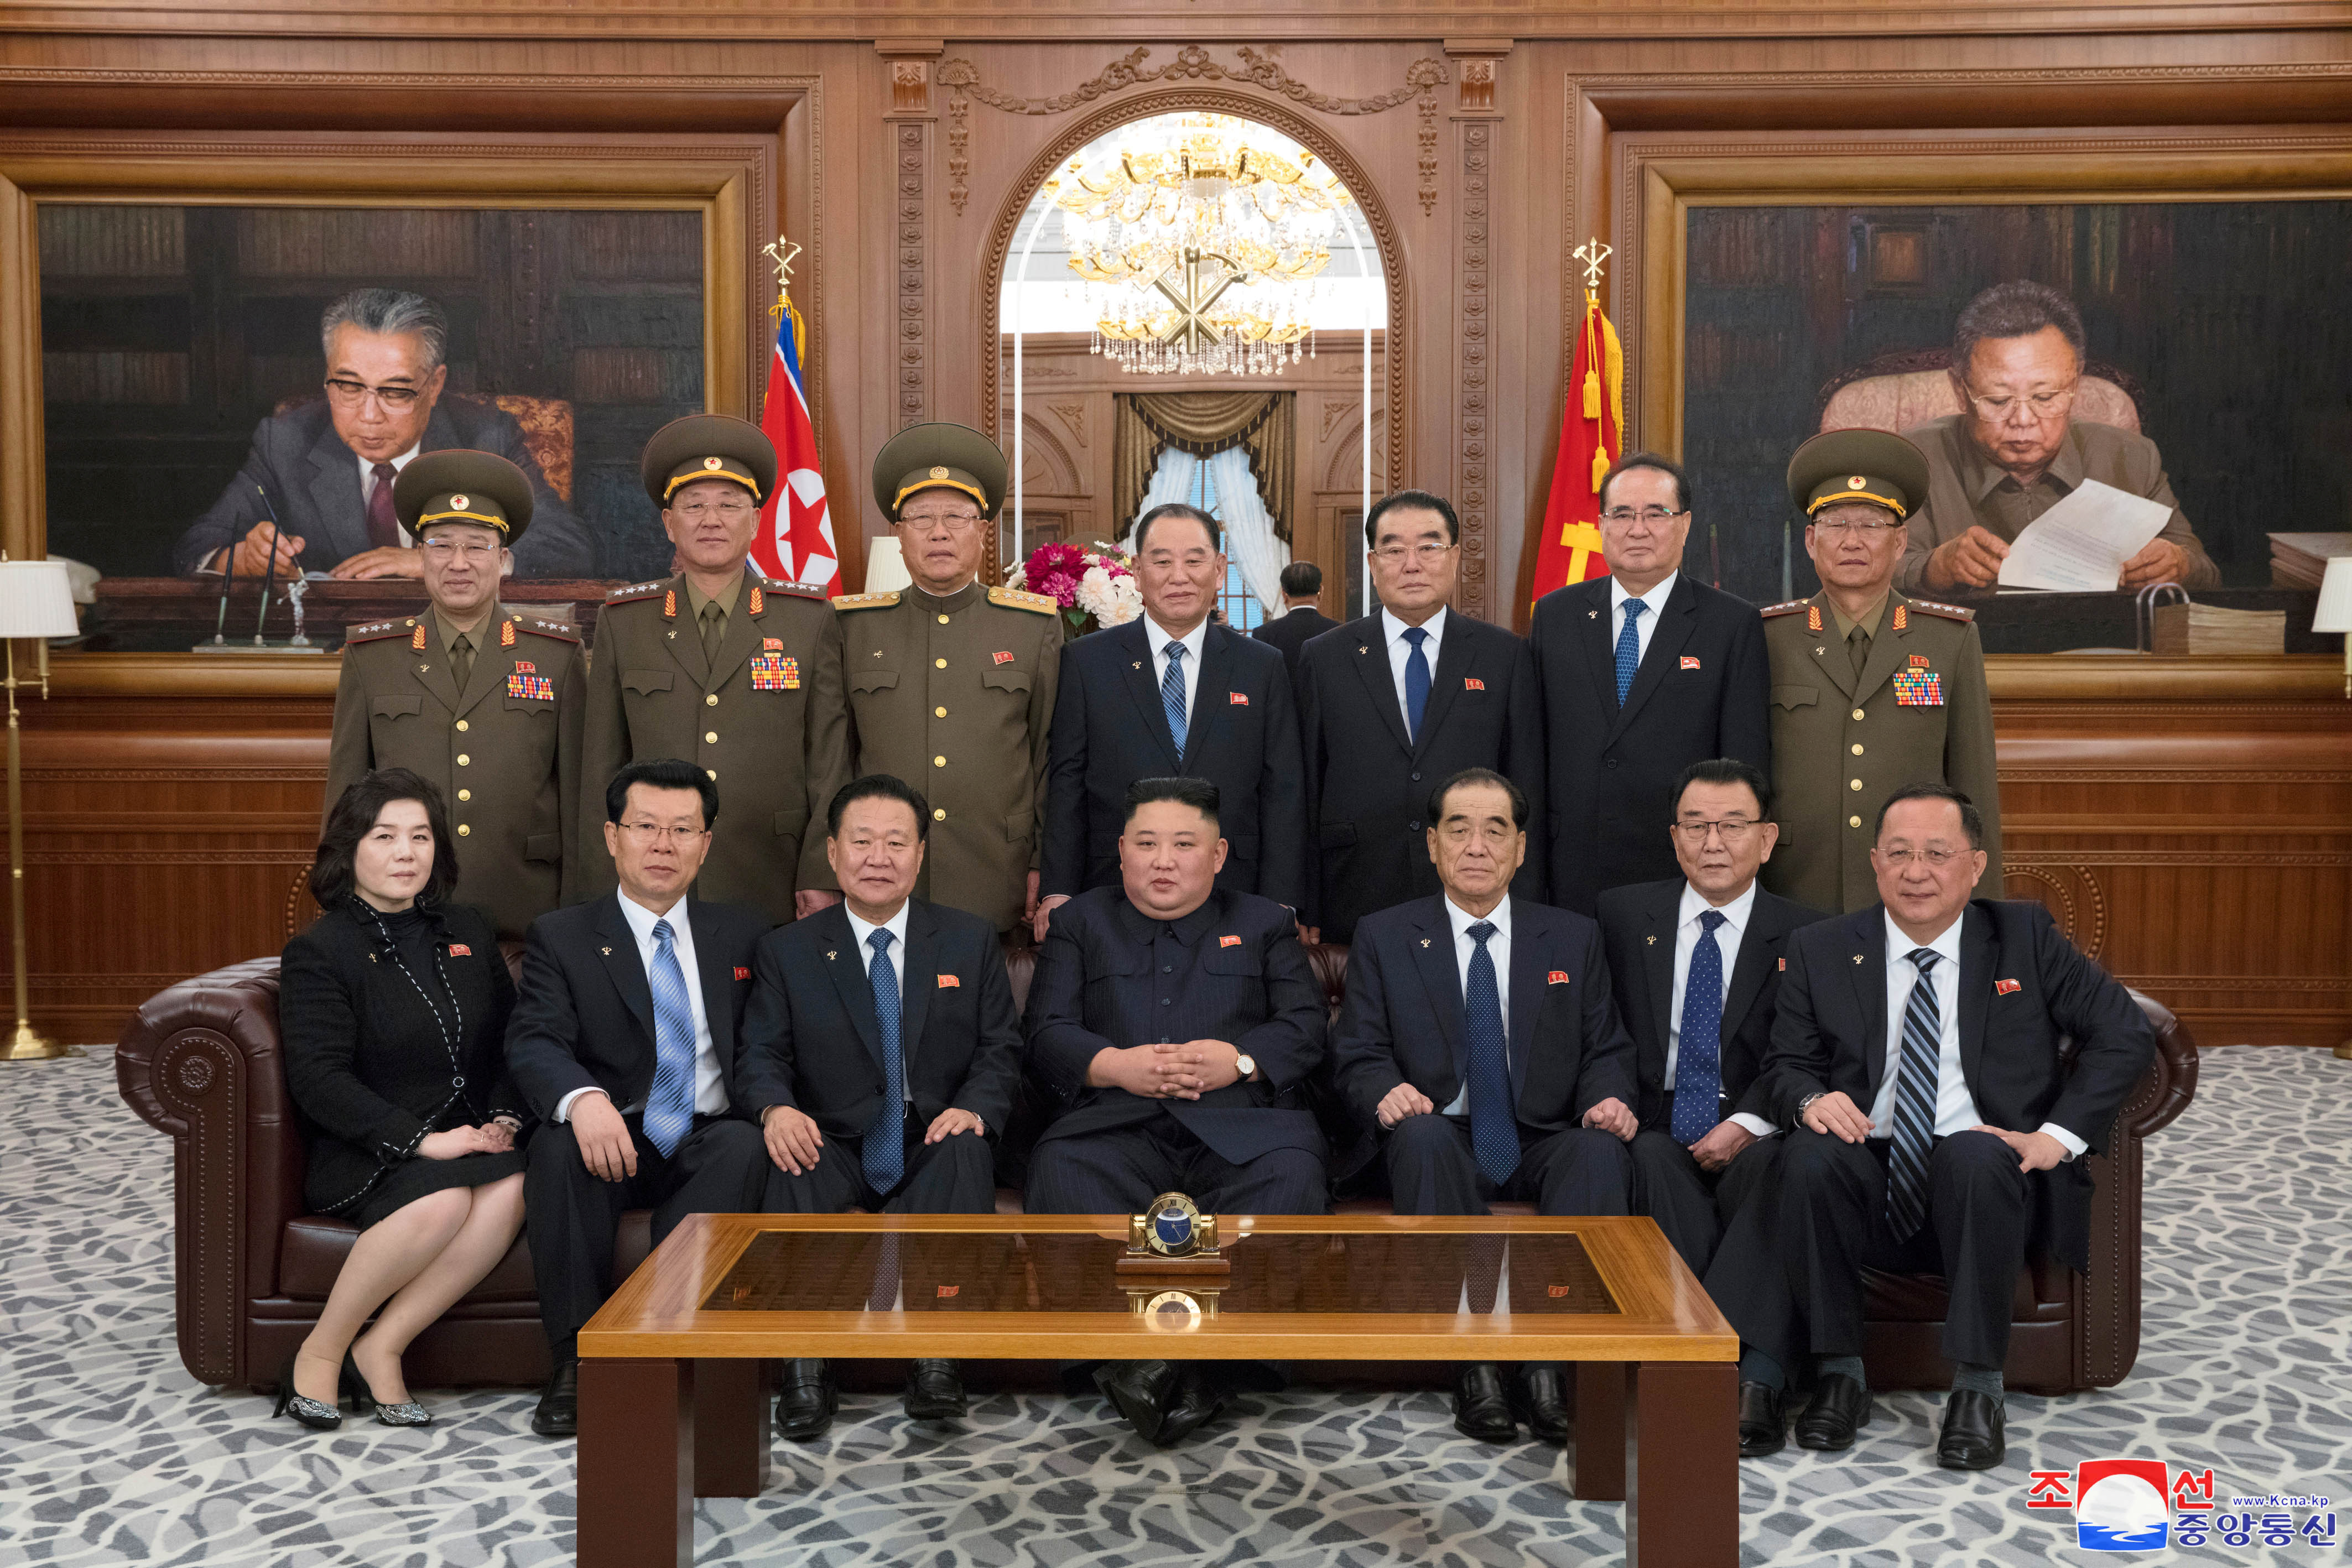 Ким в окружении преданных парламентариев